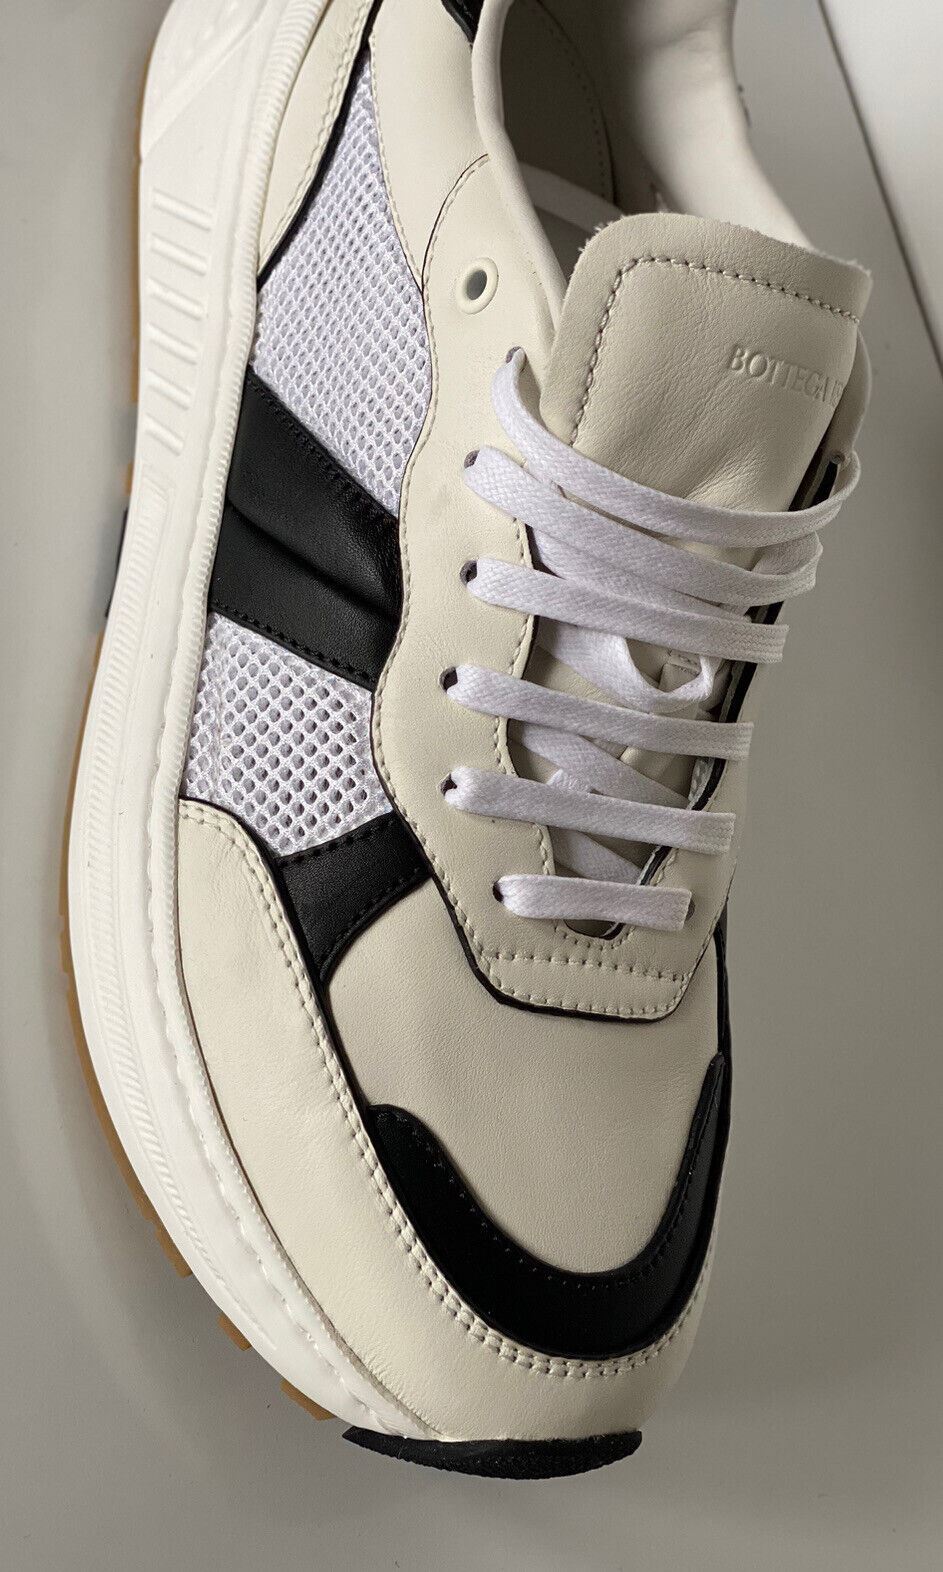 NIB $790 Bottega Veneta Men's Leather & Mesh Sneakers White/Black 10 US 565646